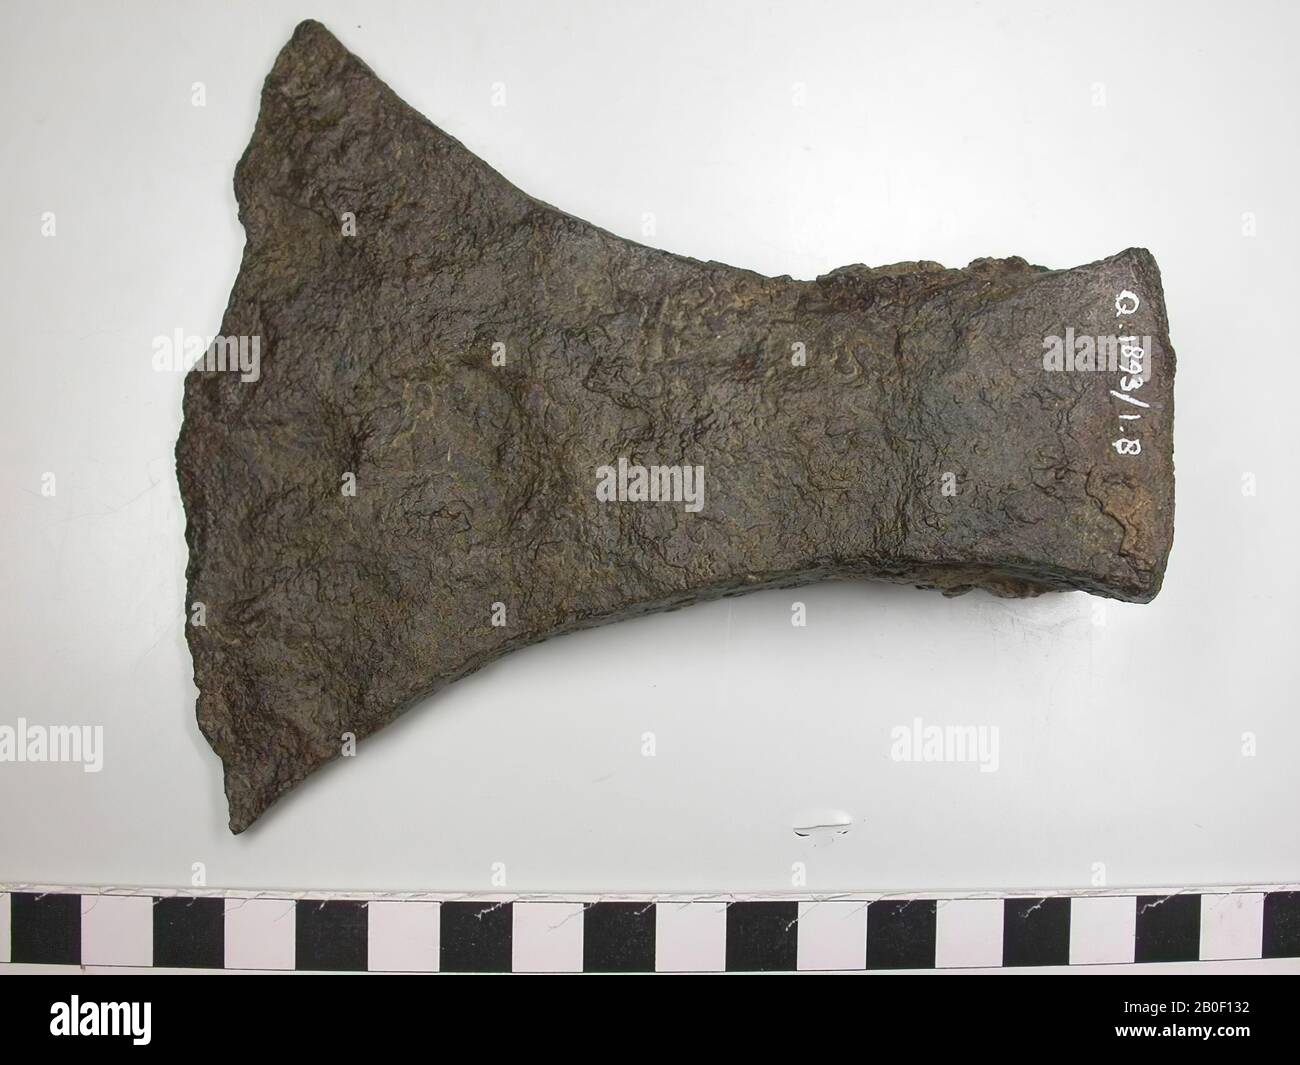 ax, metal, iron, 13,2 x 11,5 x 3,8 cm, Belgium, unknown, unknown, Tongeren Stock Photo